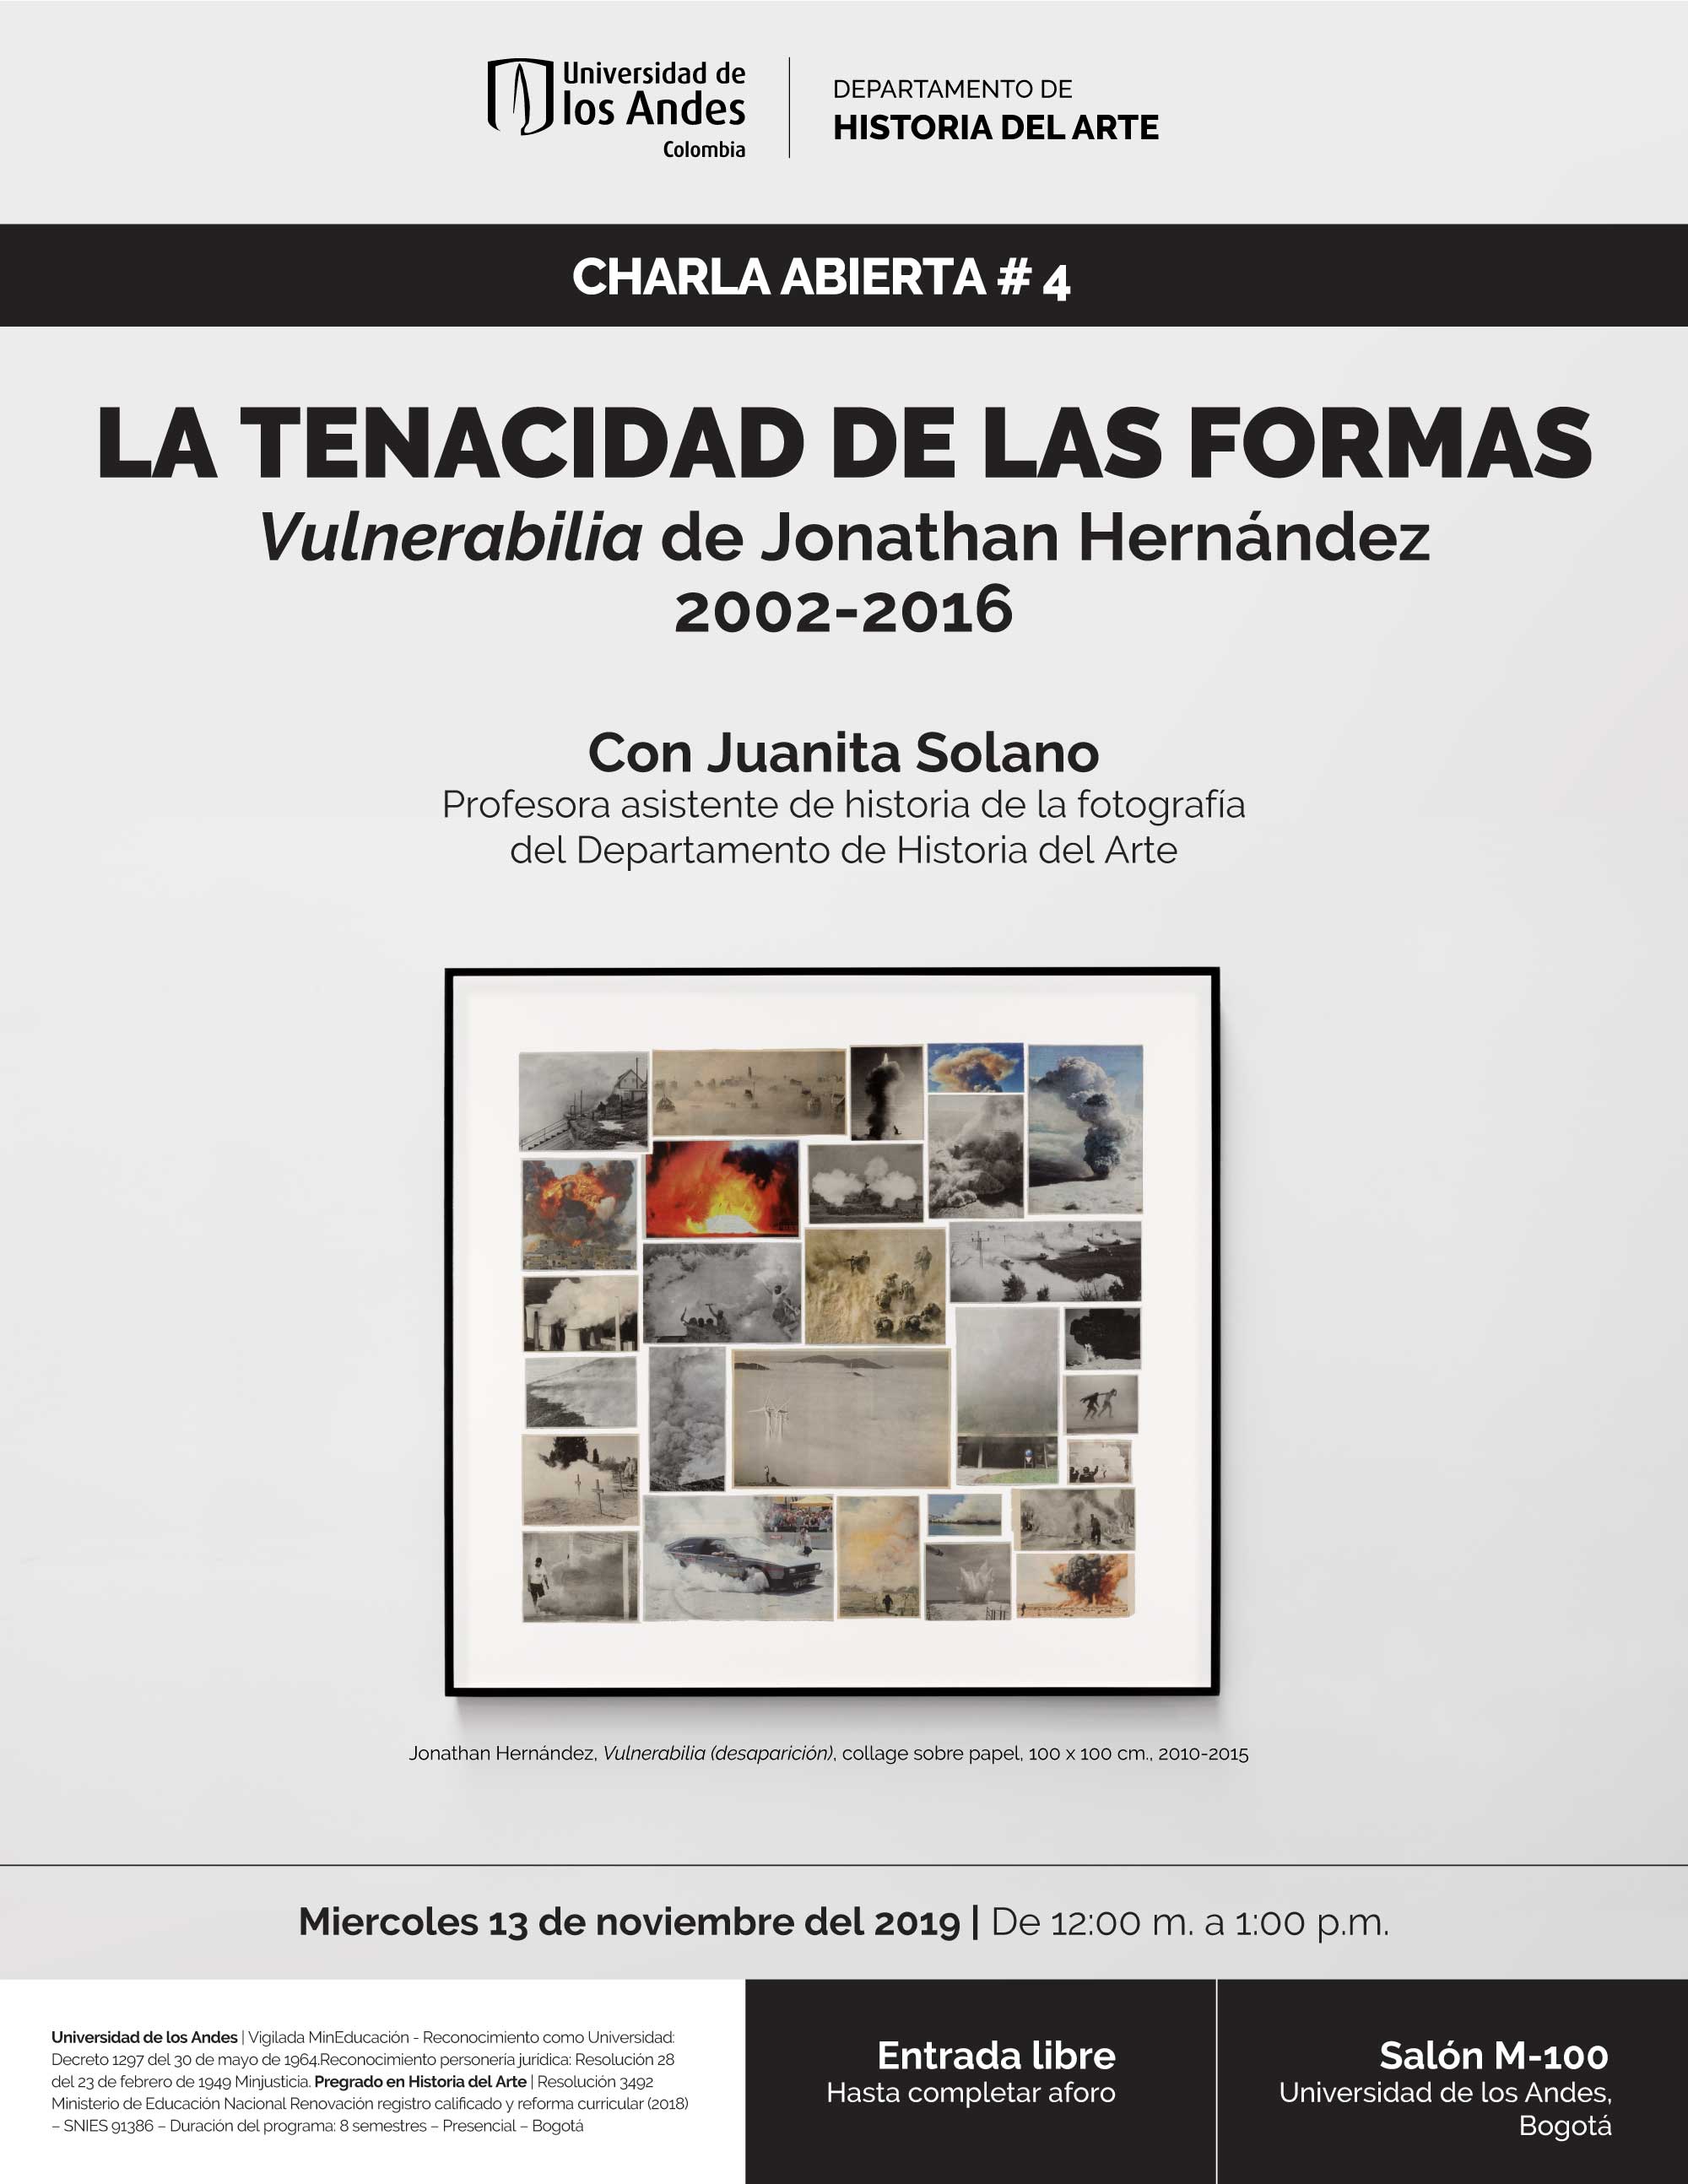 La tenacidad de las formas, Vulnerabilia de Jonathan Hernández 2002-2016 – Charla abierta #4